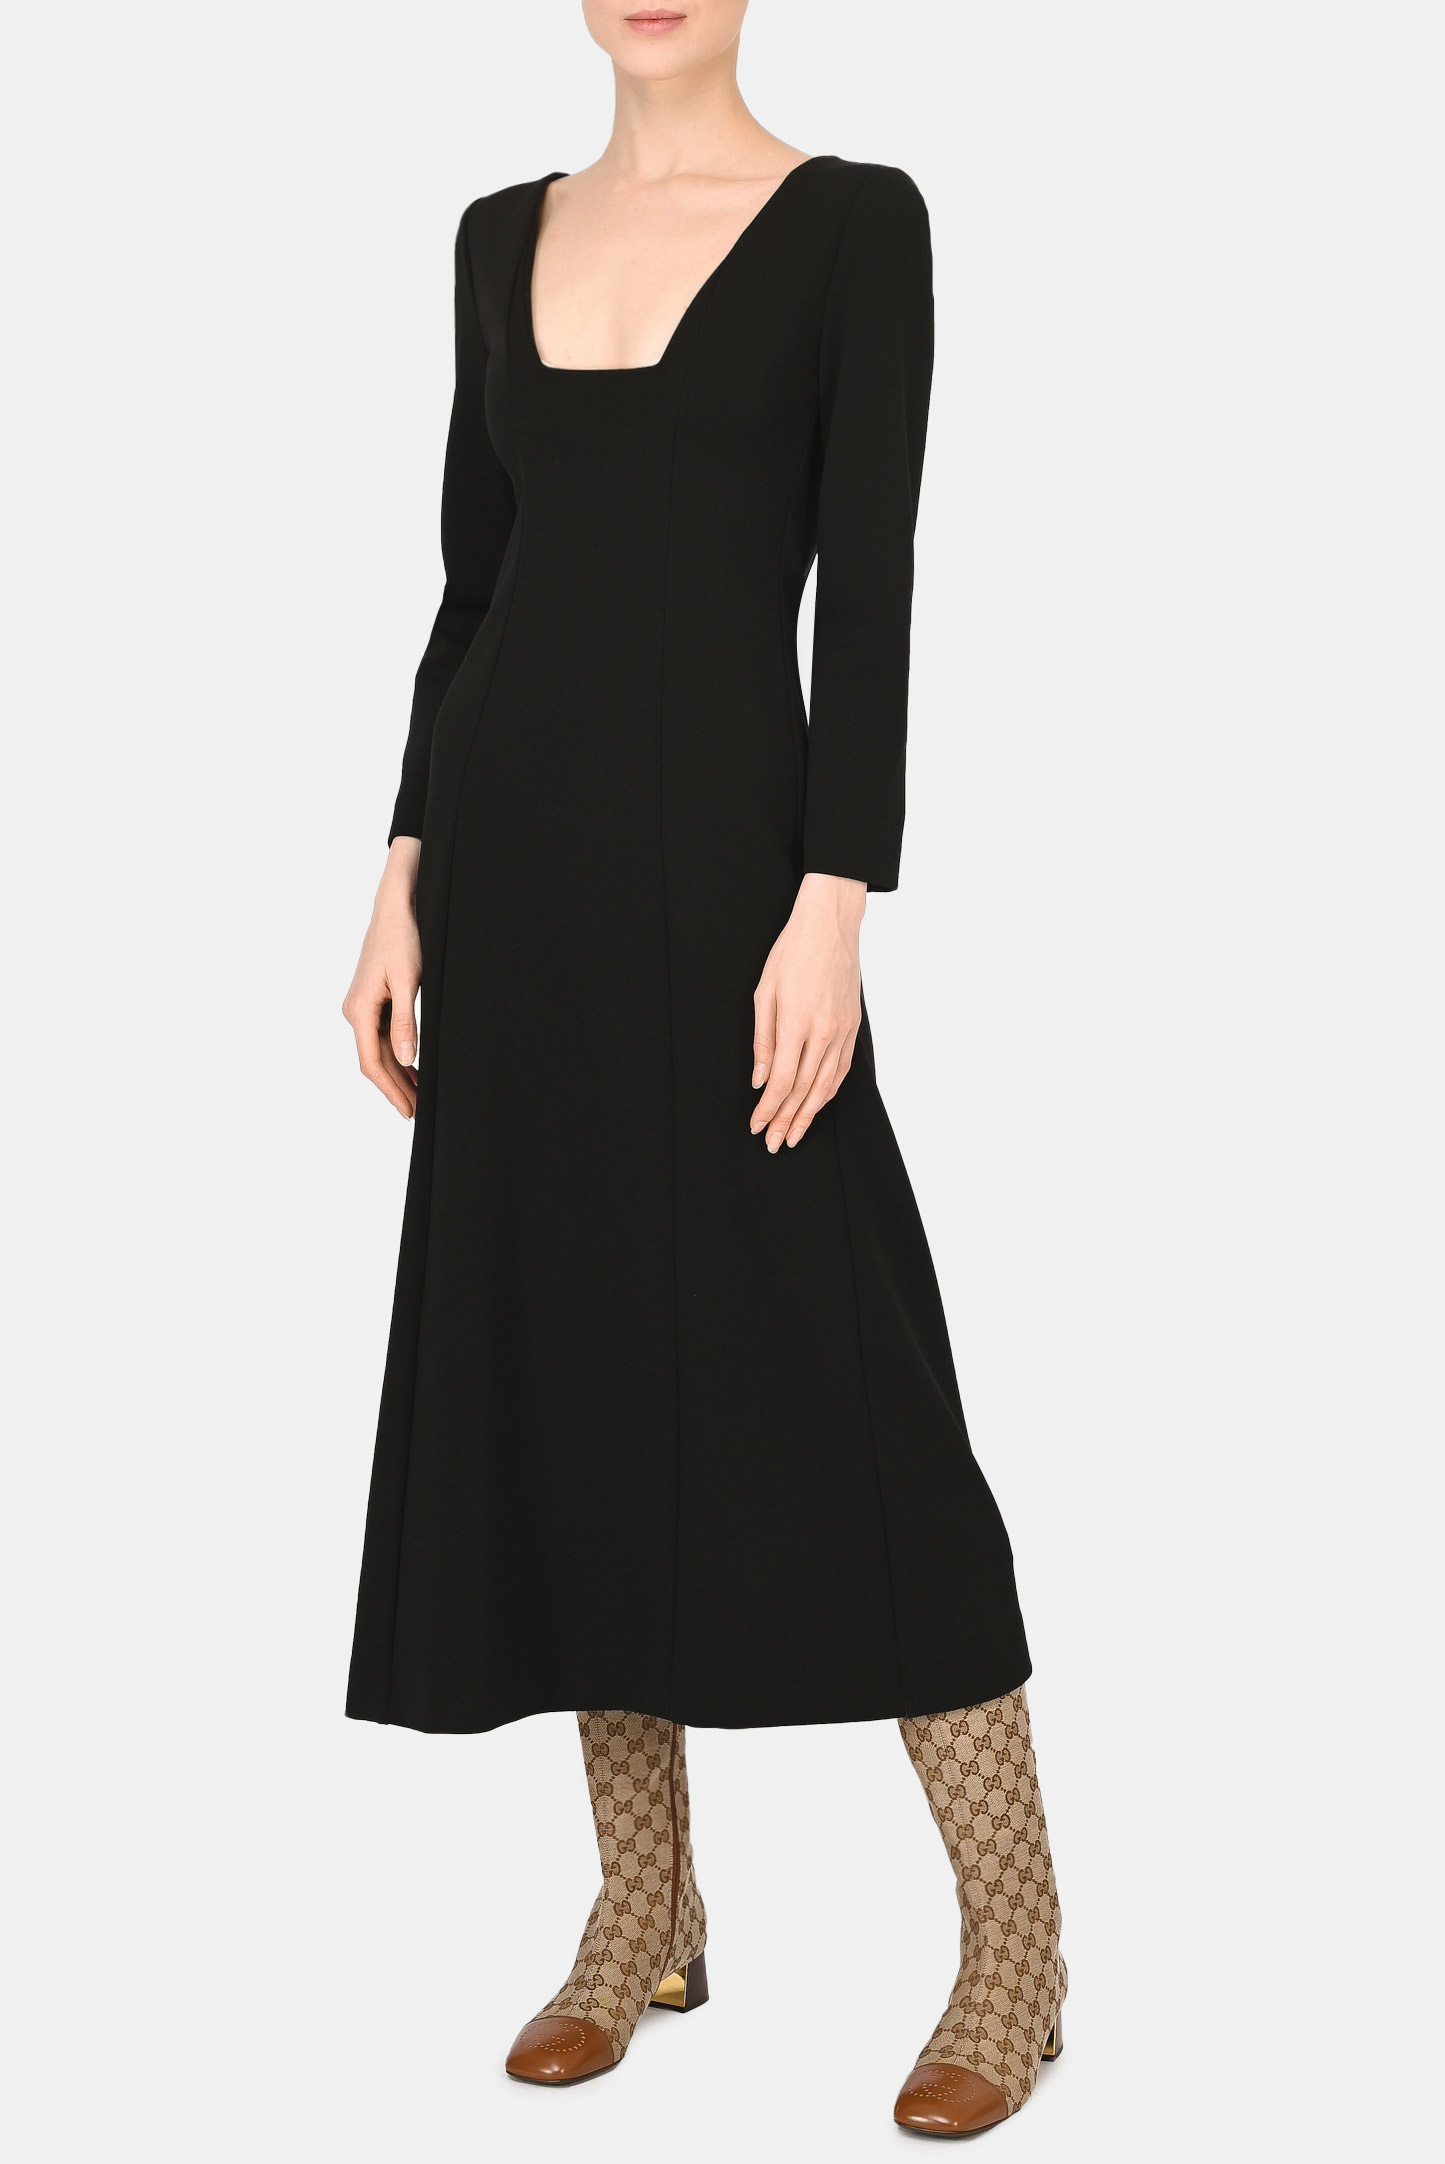 Платье GUCCI 666250 X7C07, цвет: Черный, Женский